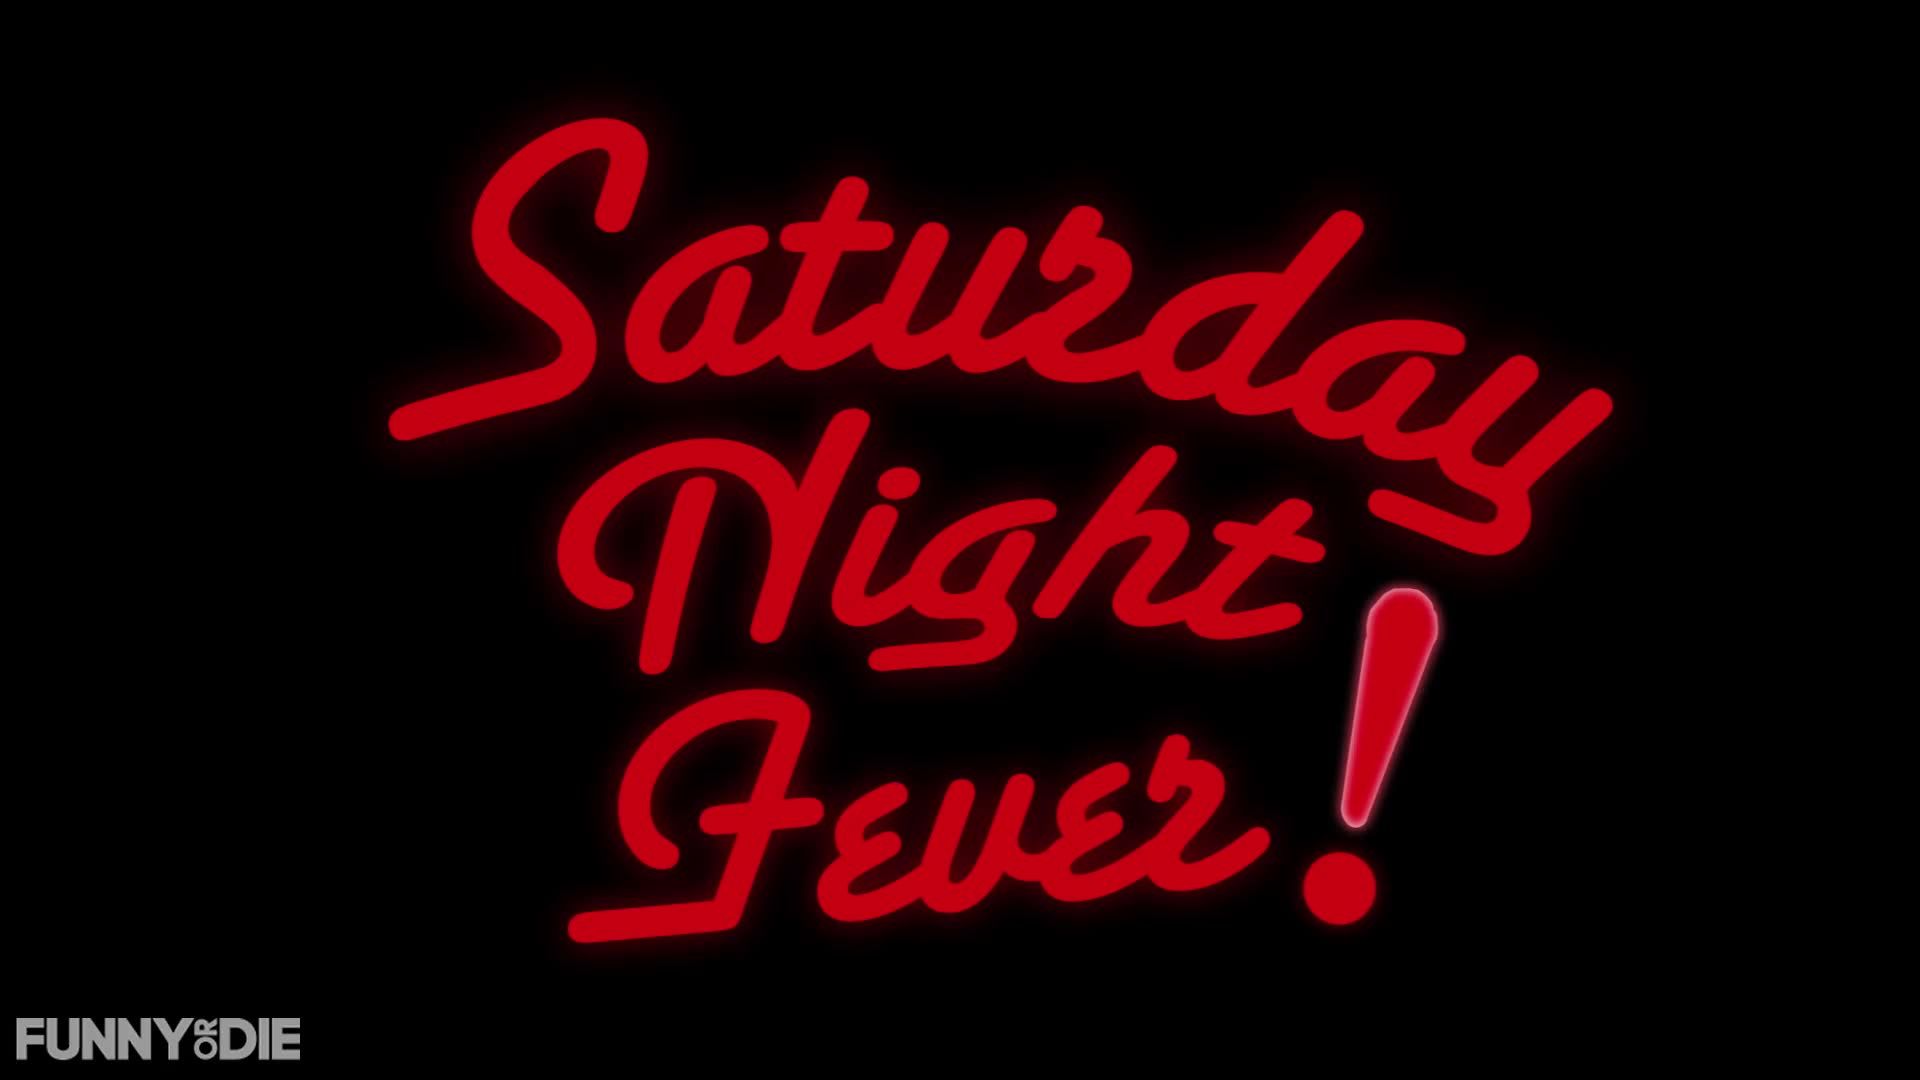 Saturday Night Fever Night Fever Wallpaper